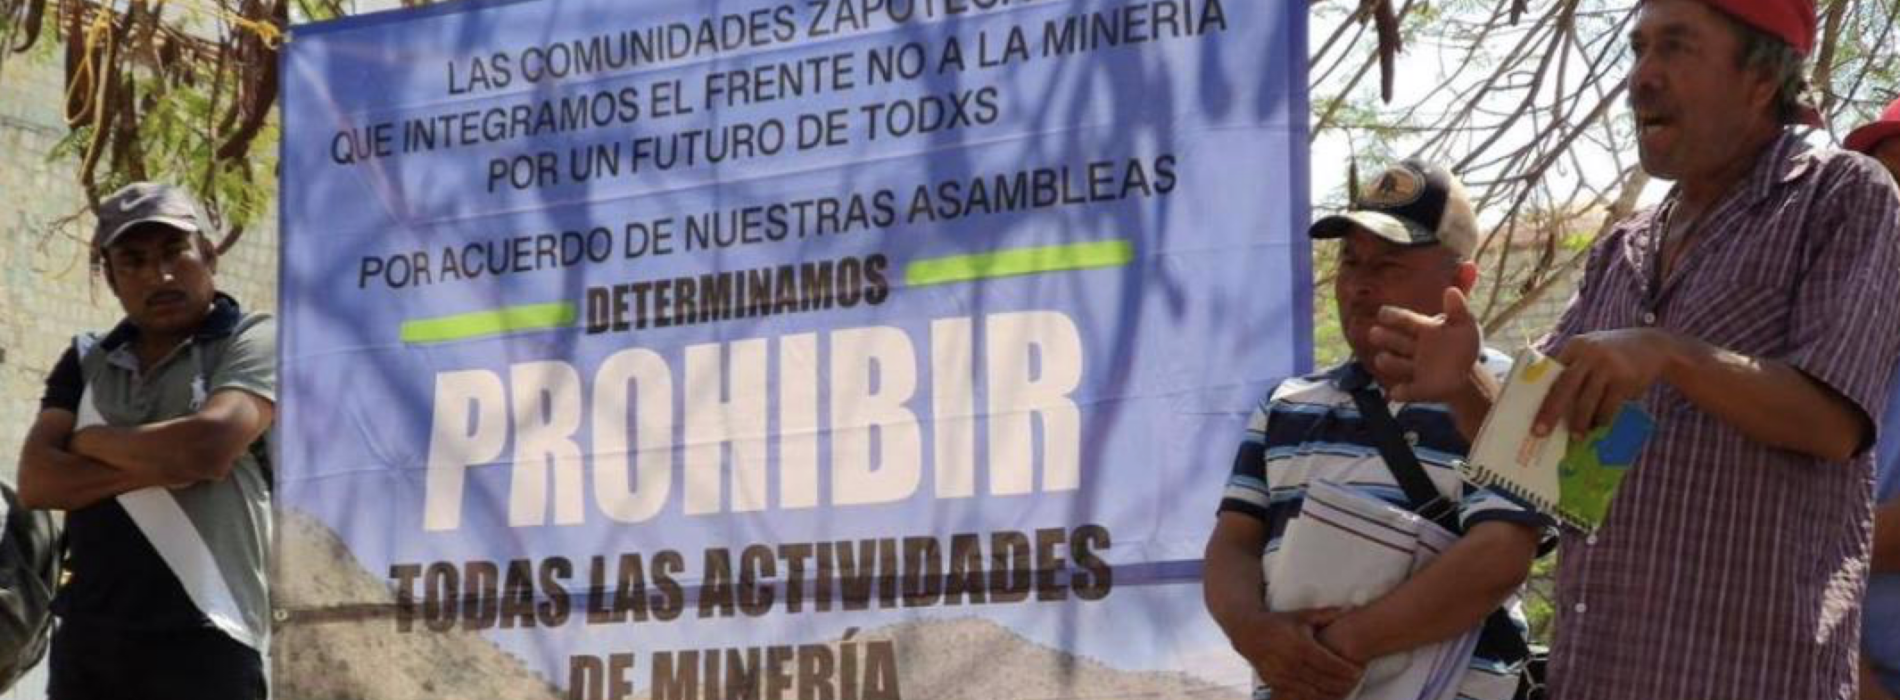 11 comunidades zapotecas de los valles de Oaxaca logran suspensión contra concesiones mineras